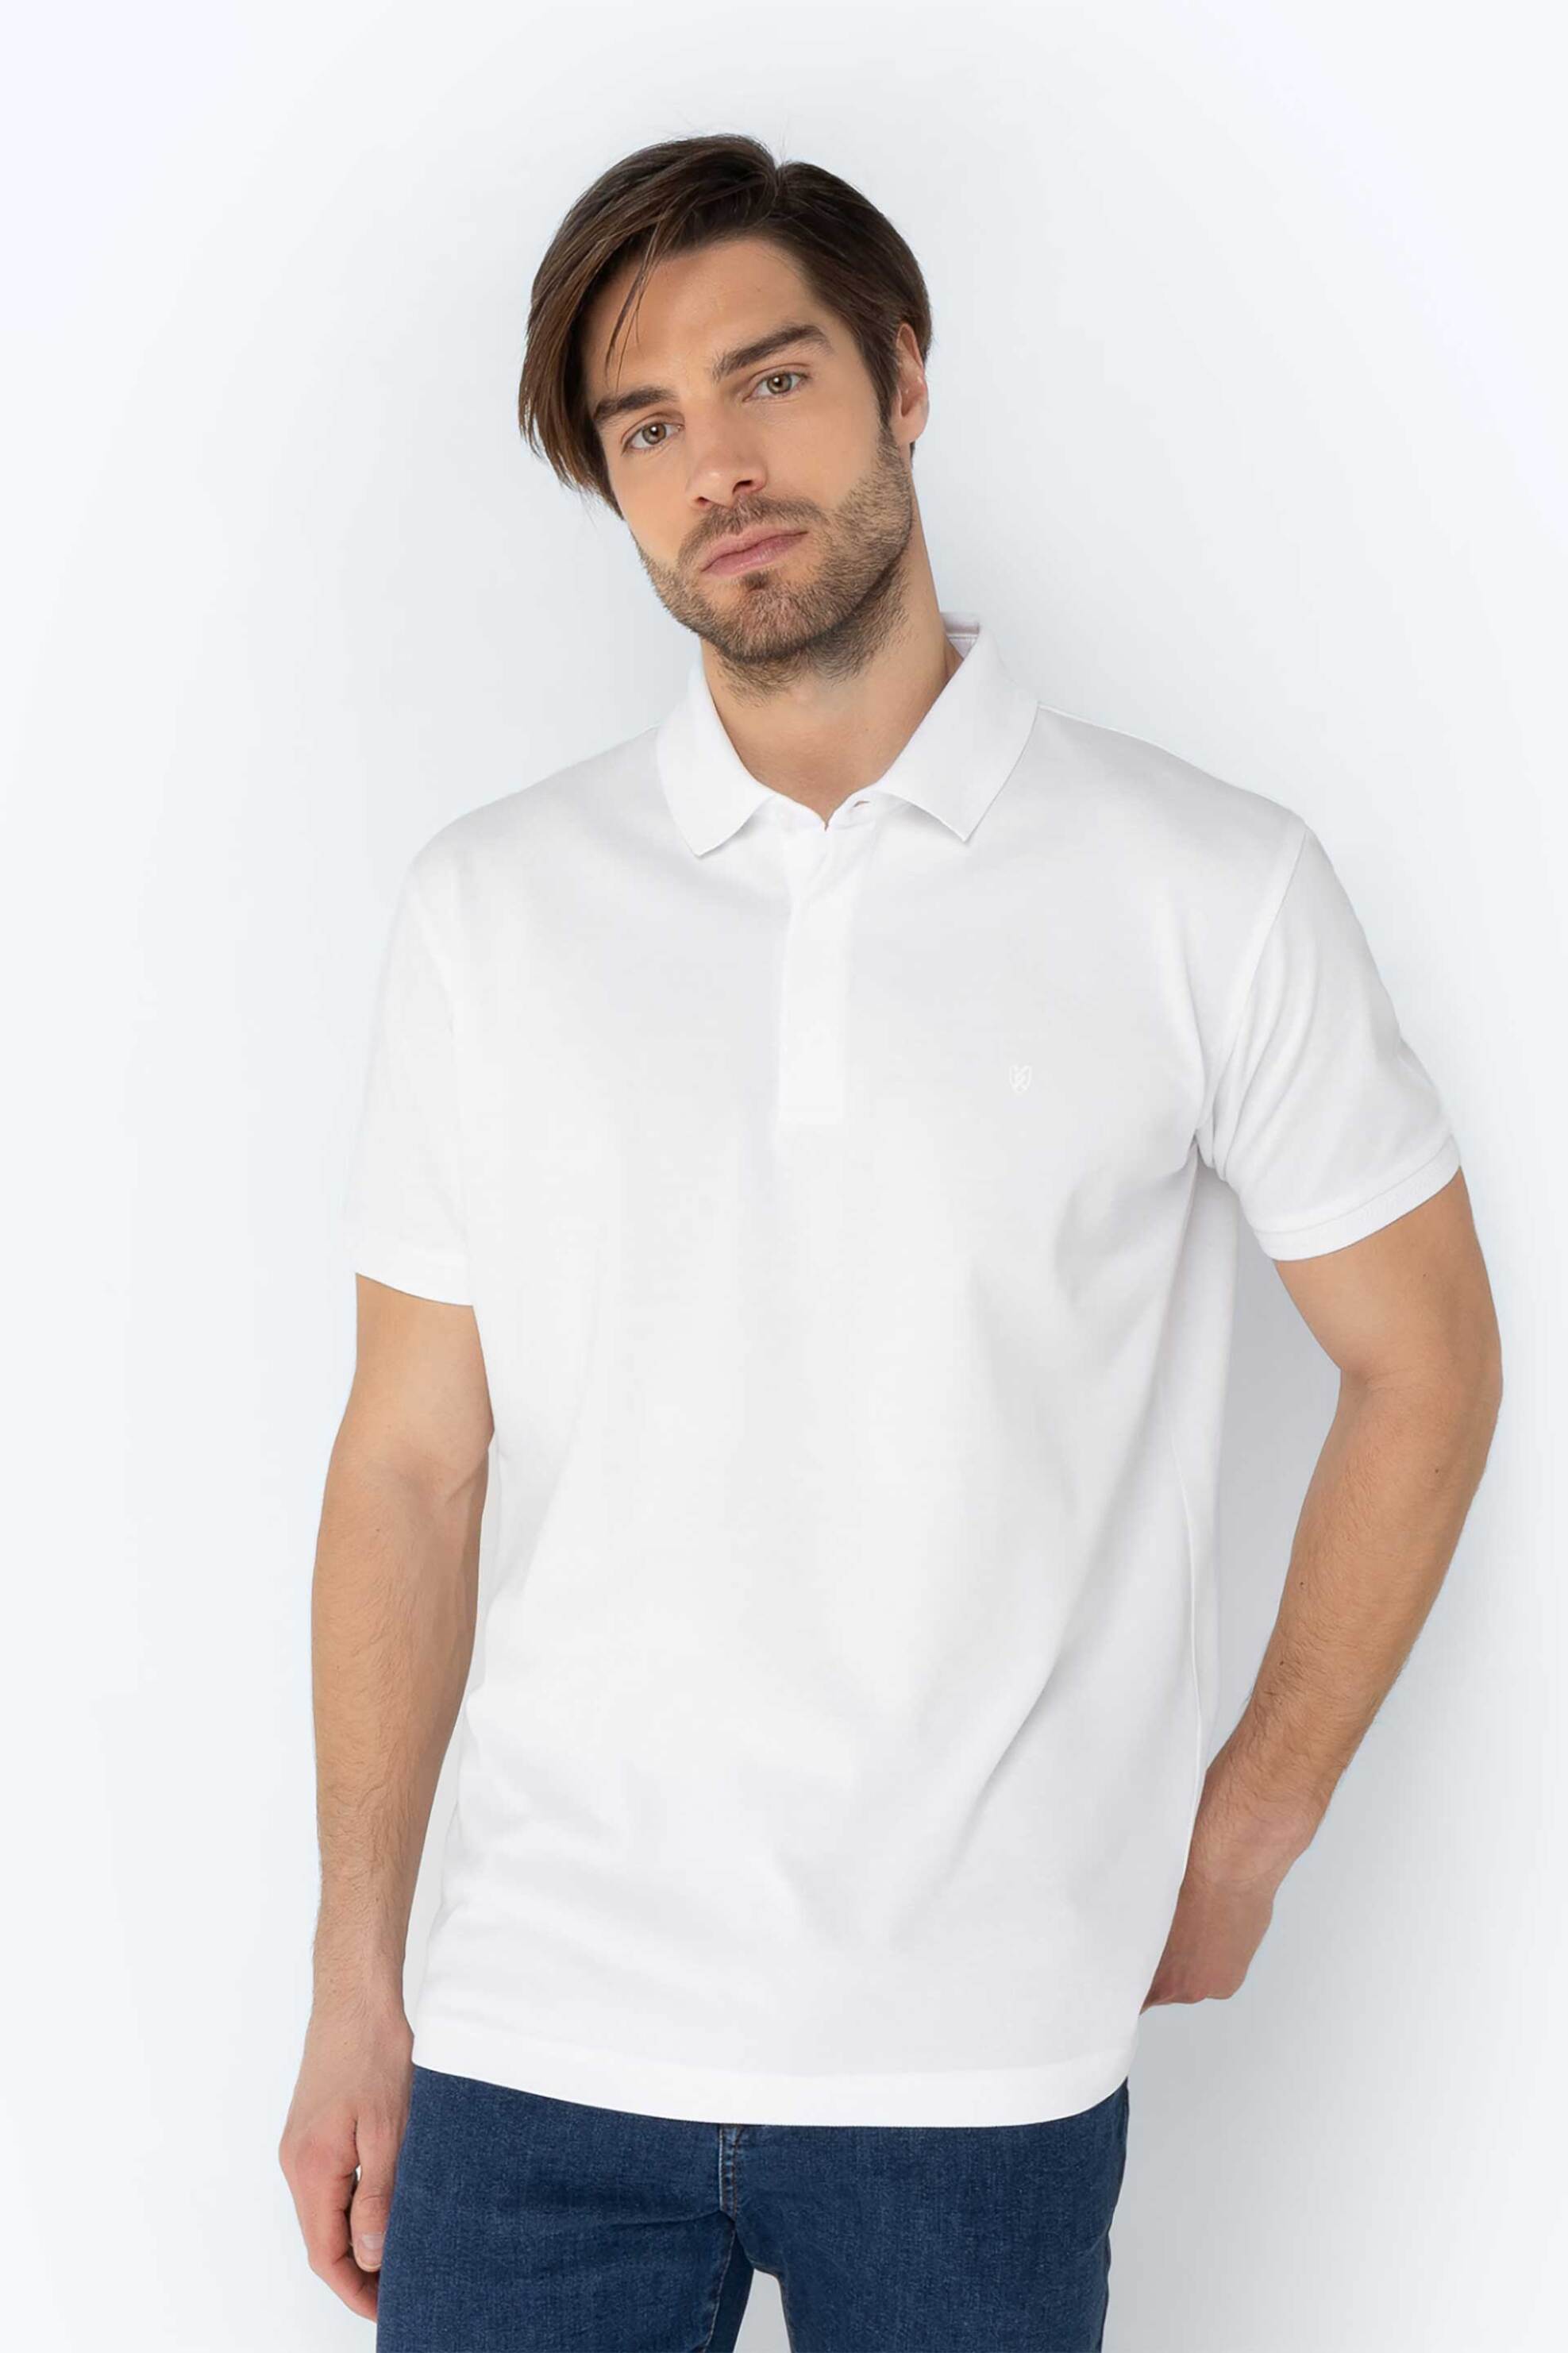 Ανδρική Μόδα > Ανδρικά Ρούχα > Ανδρικές Μπλούζες > Ανδρικές Μπλούζες Πολο The Bostonians ανδρική πόλο μπλούζα πικέ με κεντημένο λογότυπο Regular Fit Λευκό